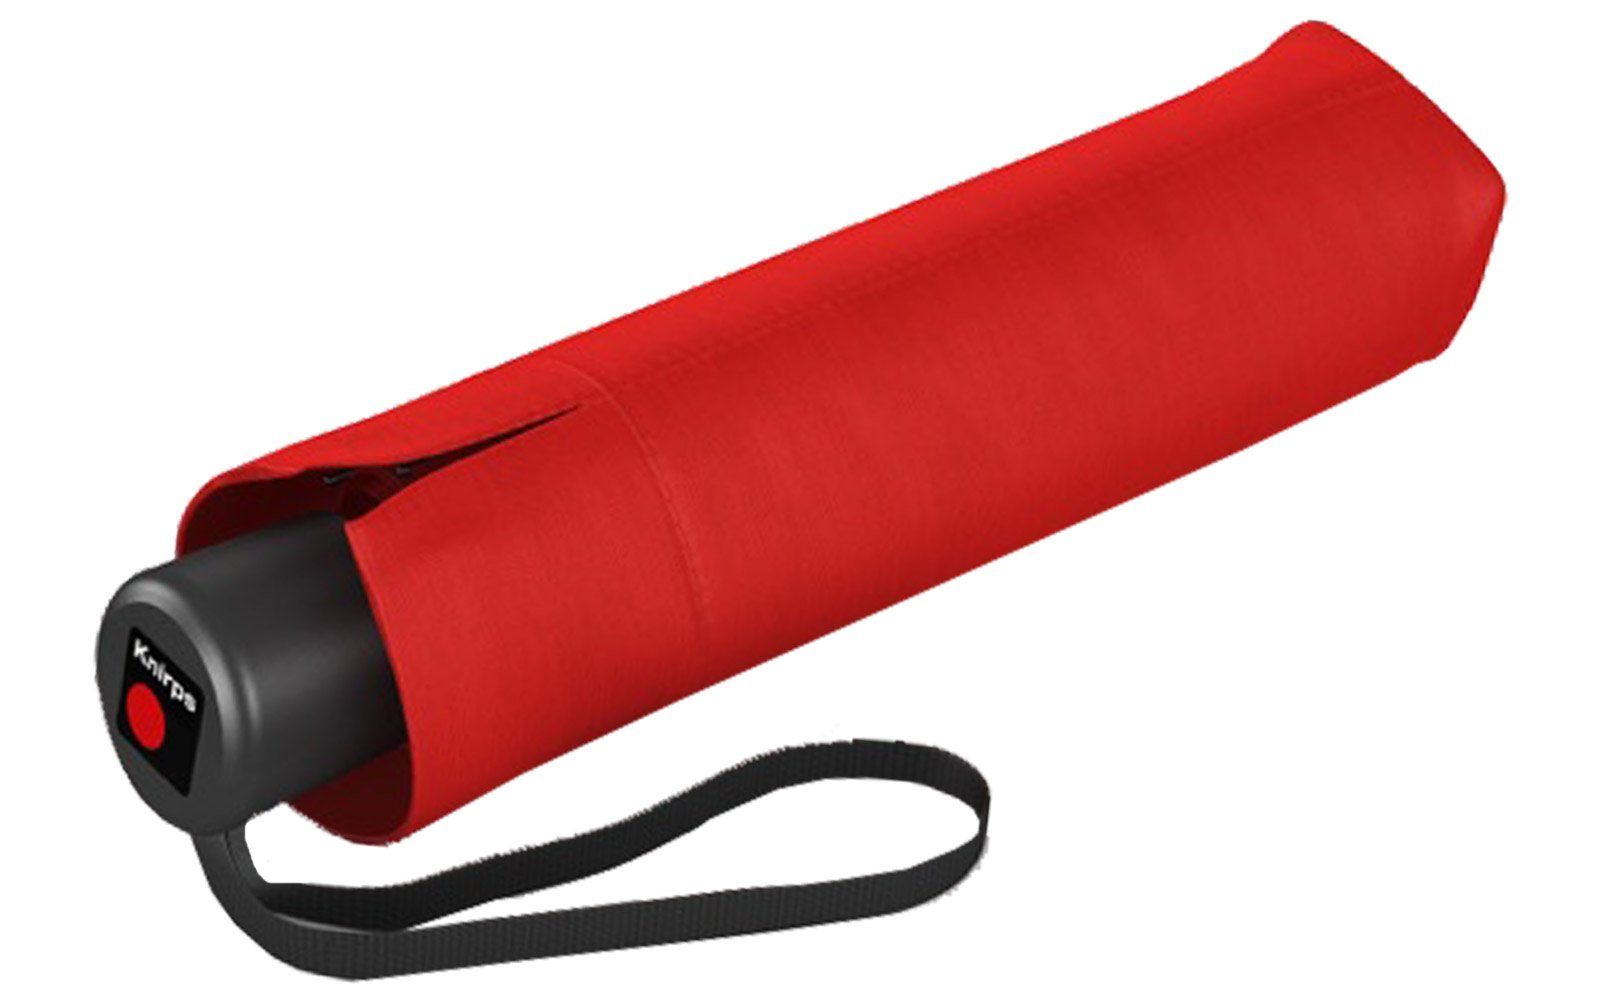 Medium und A.050 Taschenregenschirm Manual, stabil Knirps® rot leicht